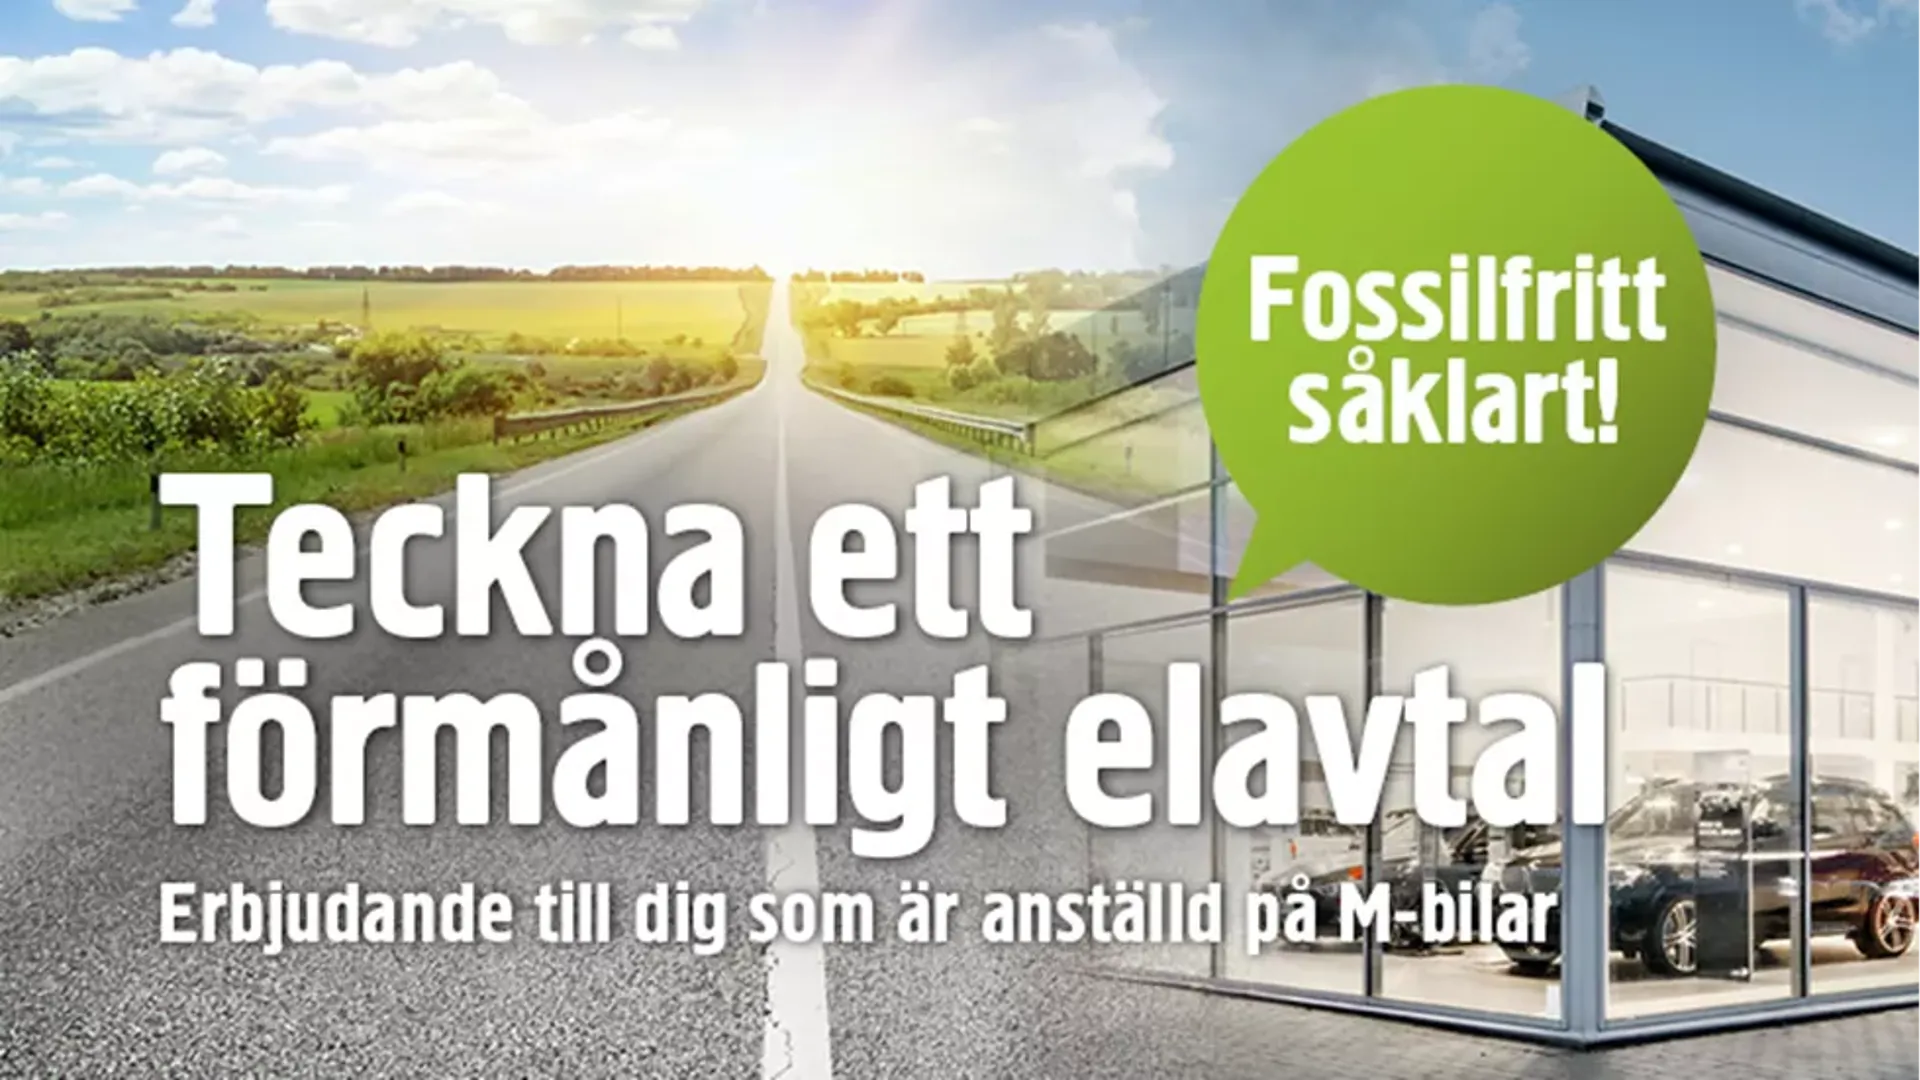 Bild på landsväg i sol och m-bilars lokaler, kampanjerbjudande för M-bilar